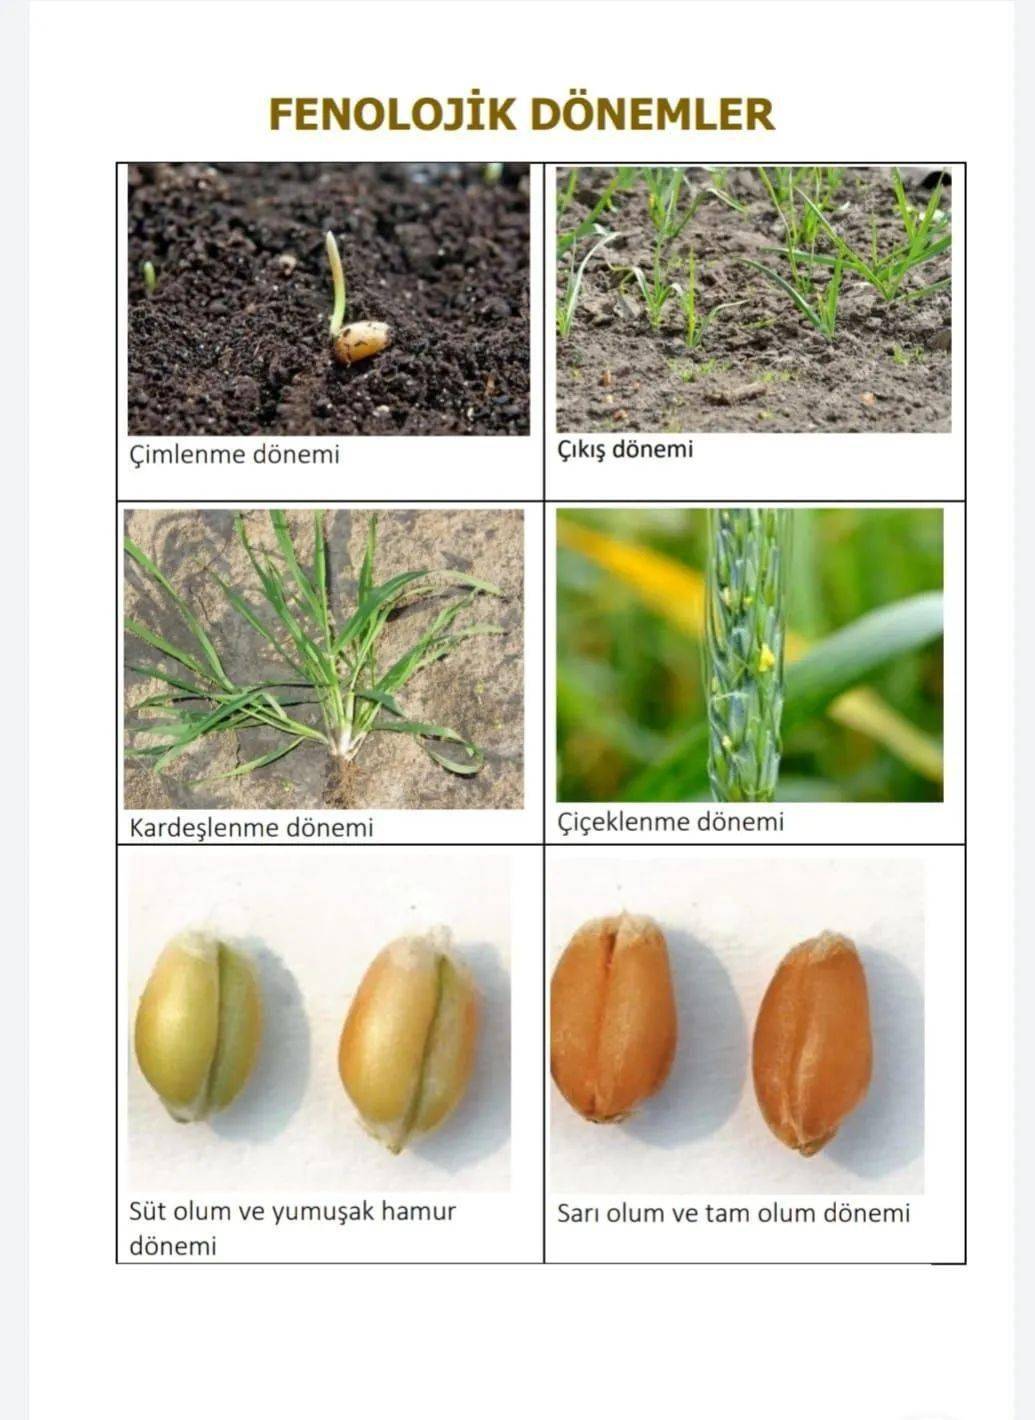 小麦发芽过程示意图图片